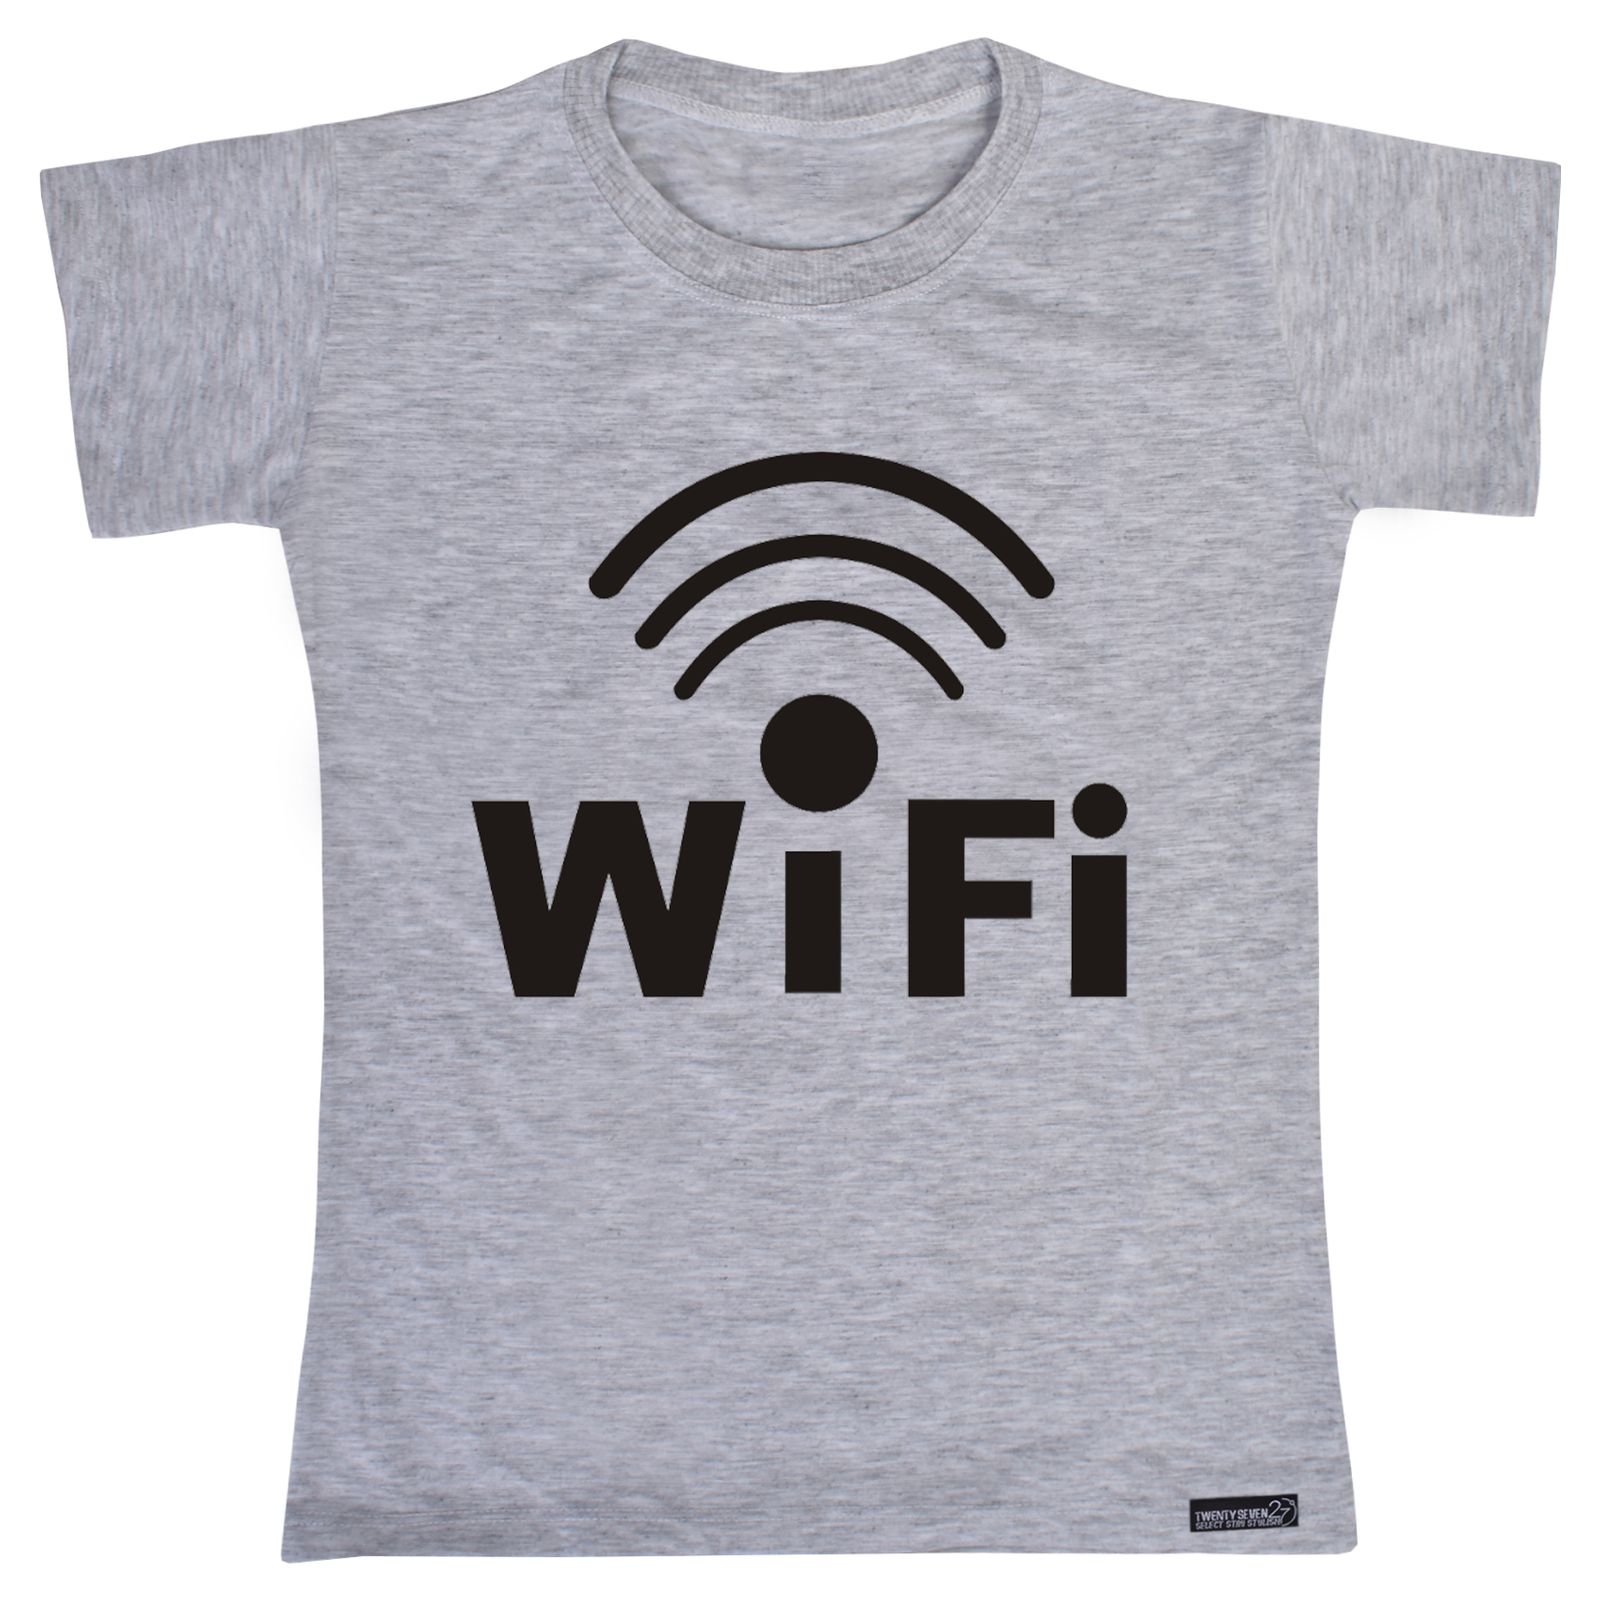 تی شرت آستین کوتاه پسرانه 27 مدل WiFi کد MH868 -  - 1